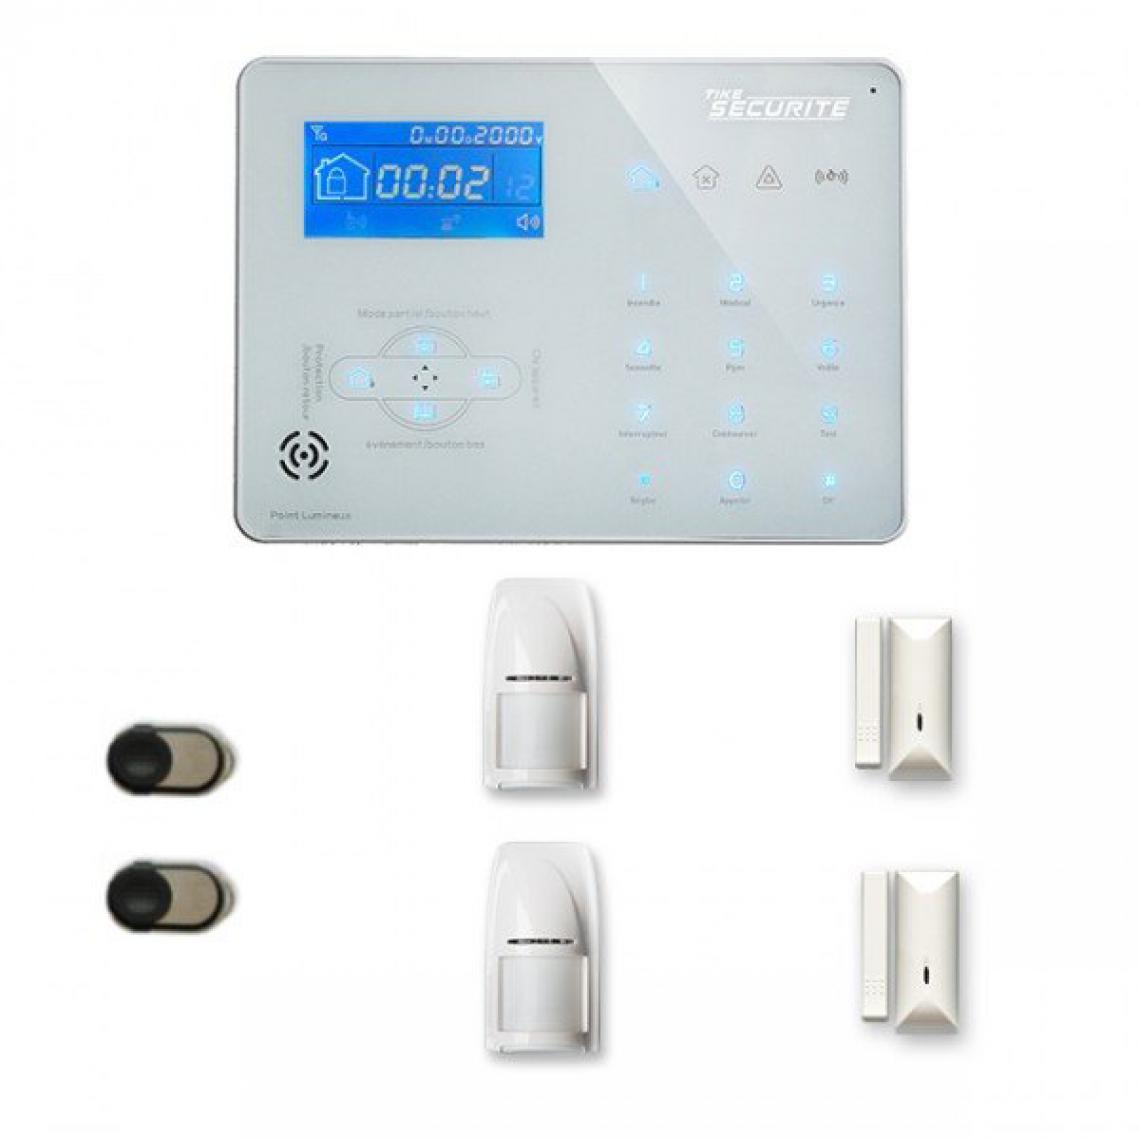 Tike Securite - Alarme maison sans fil ICE-B20 Compatible Box internet et GSM - Alarme connectée